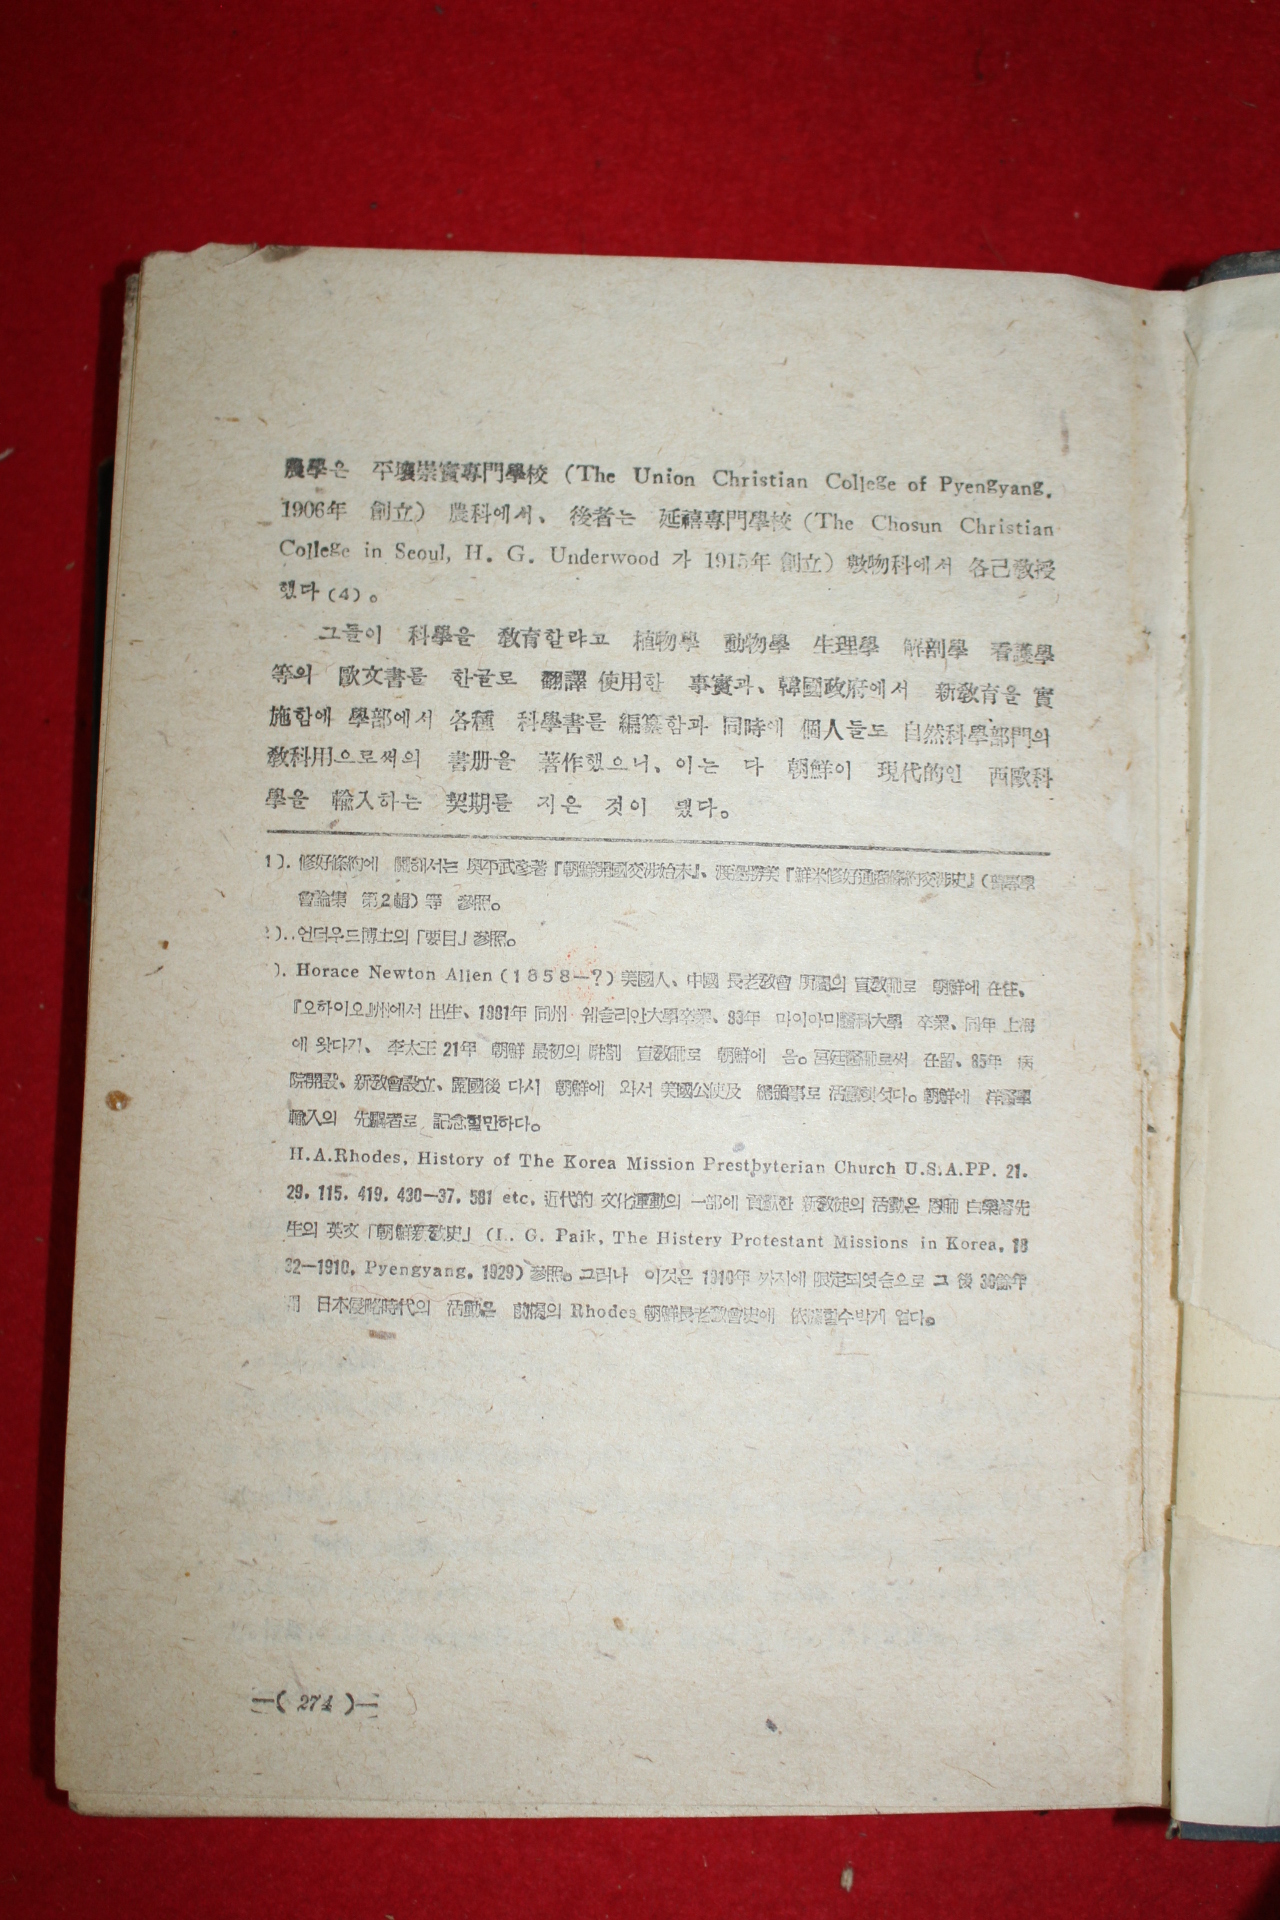 1946년초판 1000부한정판 홍이섭(洪以變) 조선과학사(朝鮮科學史)